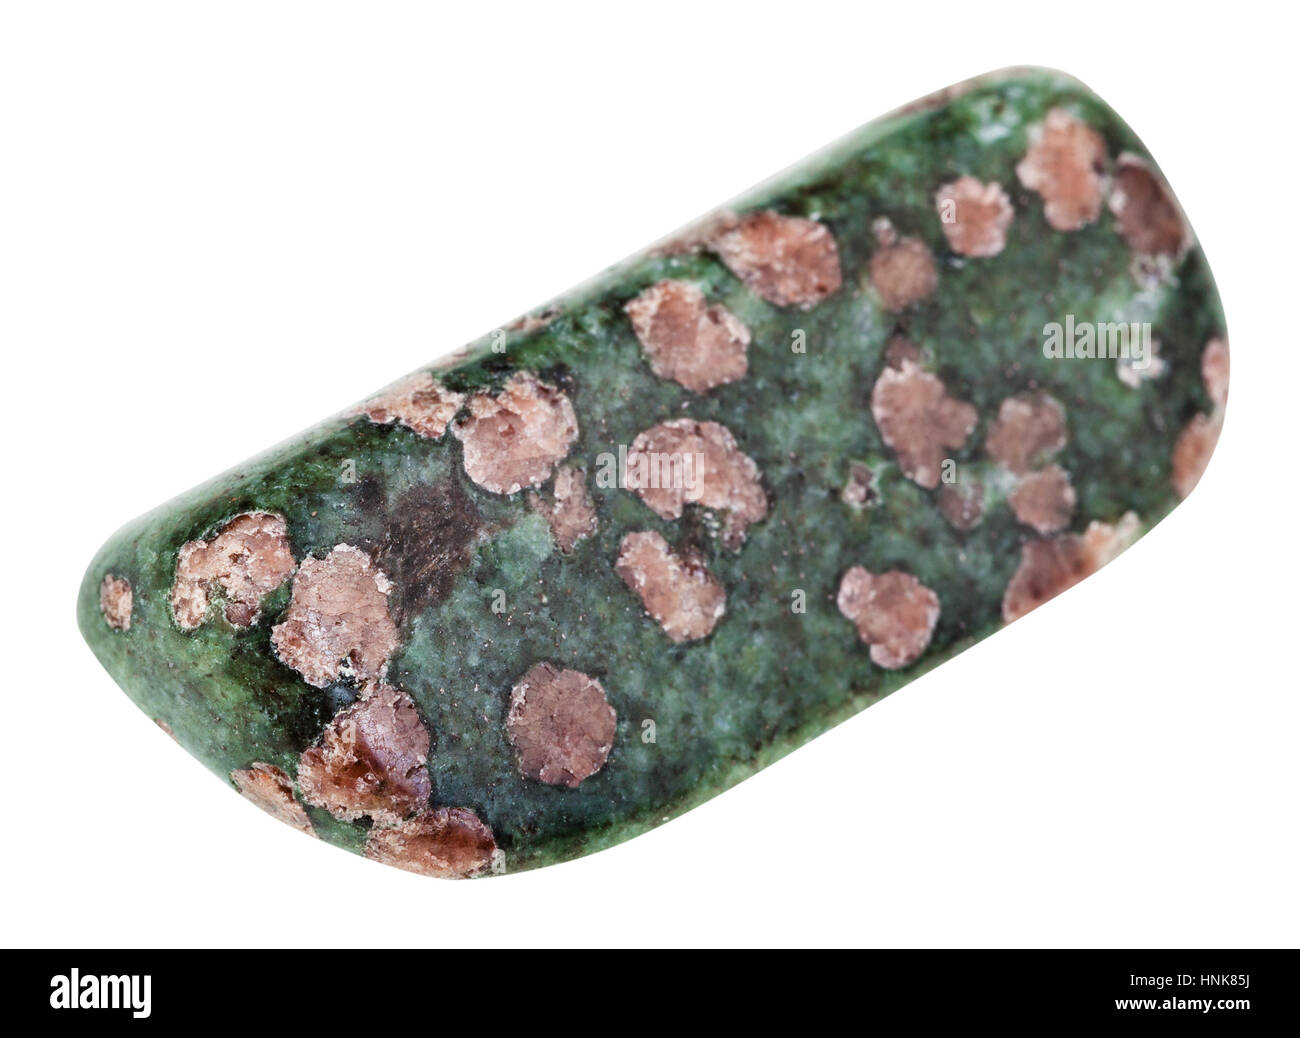 Makro-Aufnahmen der geologischen Sammlung Mineral - Eklogit Polierstein (rosa Granat Almandin-Pyrop Kristalle in grünen Matrix aus Pyroxen, omphacit Stockfoto